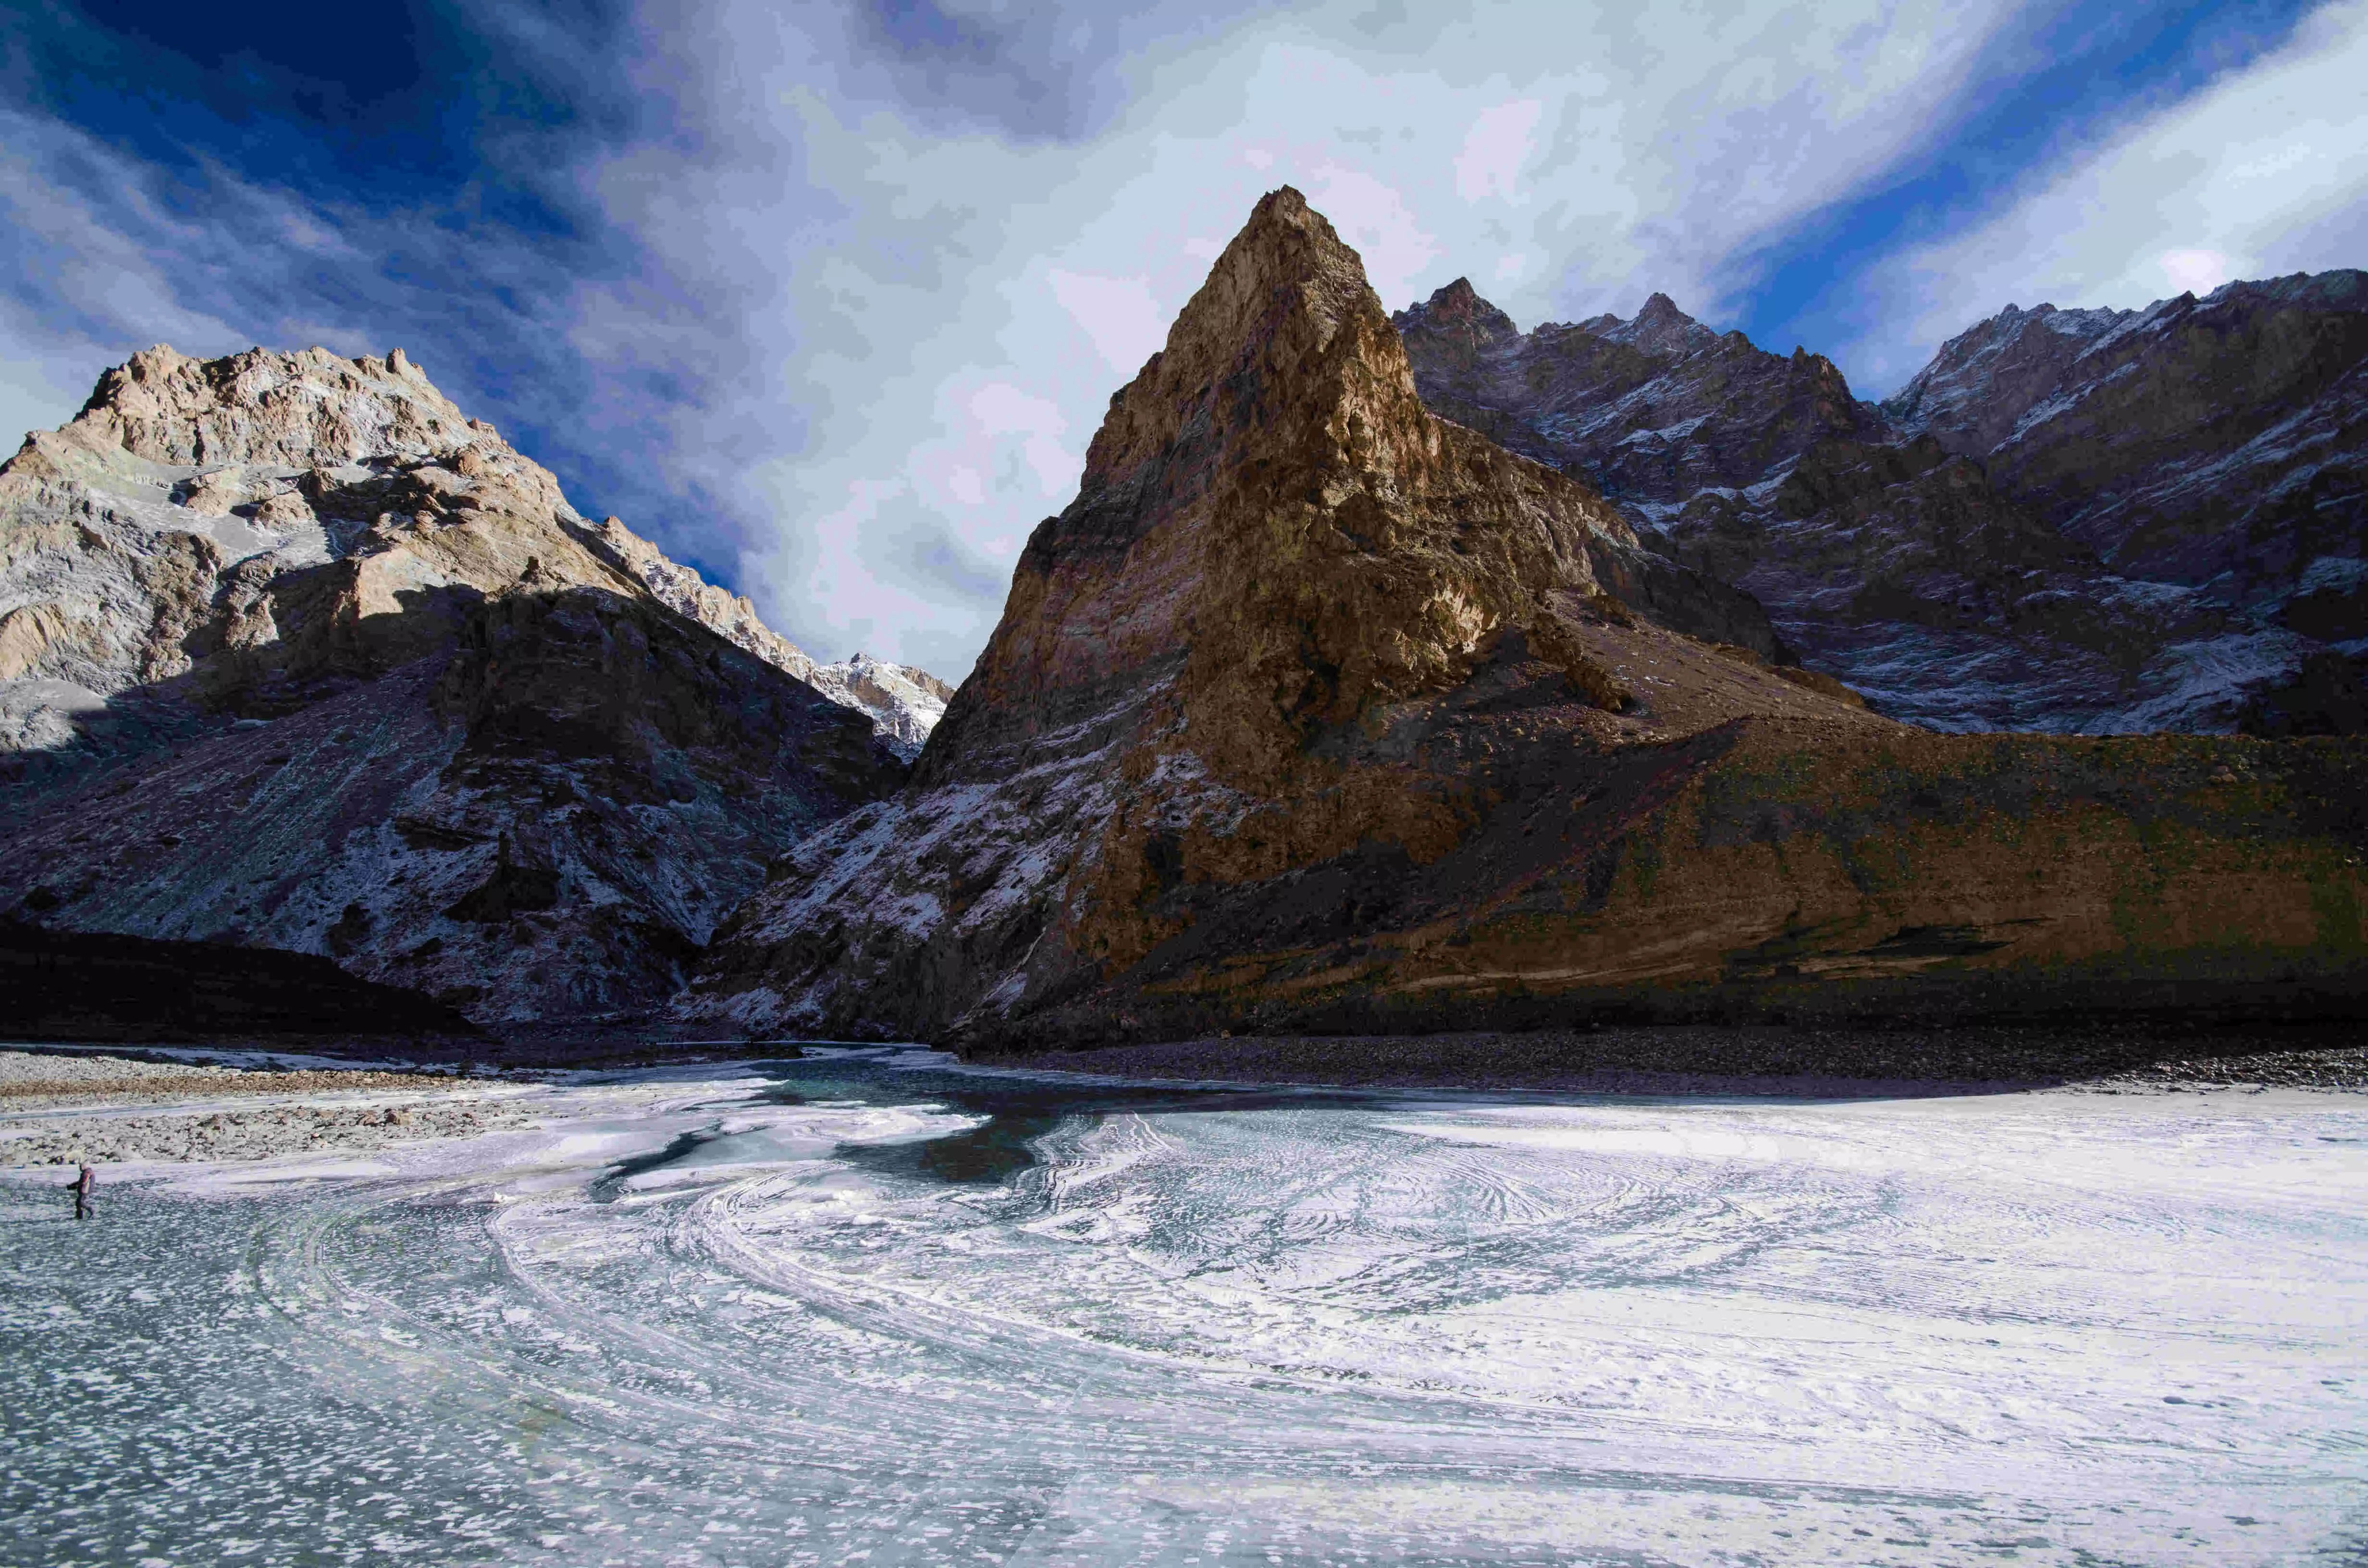 सेटेलाइट मॉनिटरिंग से कम कर सकते हैं हिमालय क्षेत्र में जान-माल का नुकसान